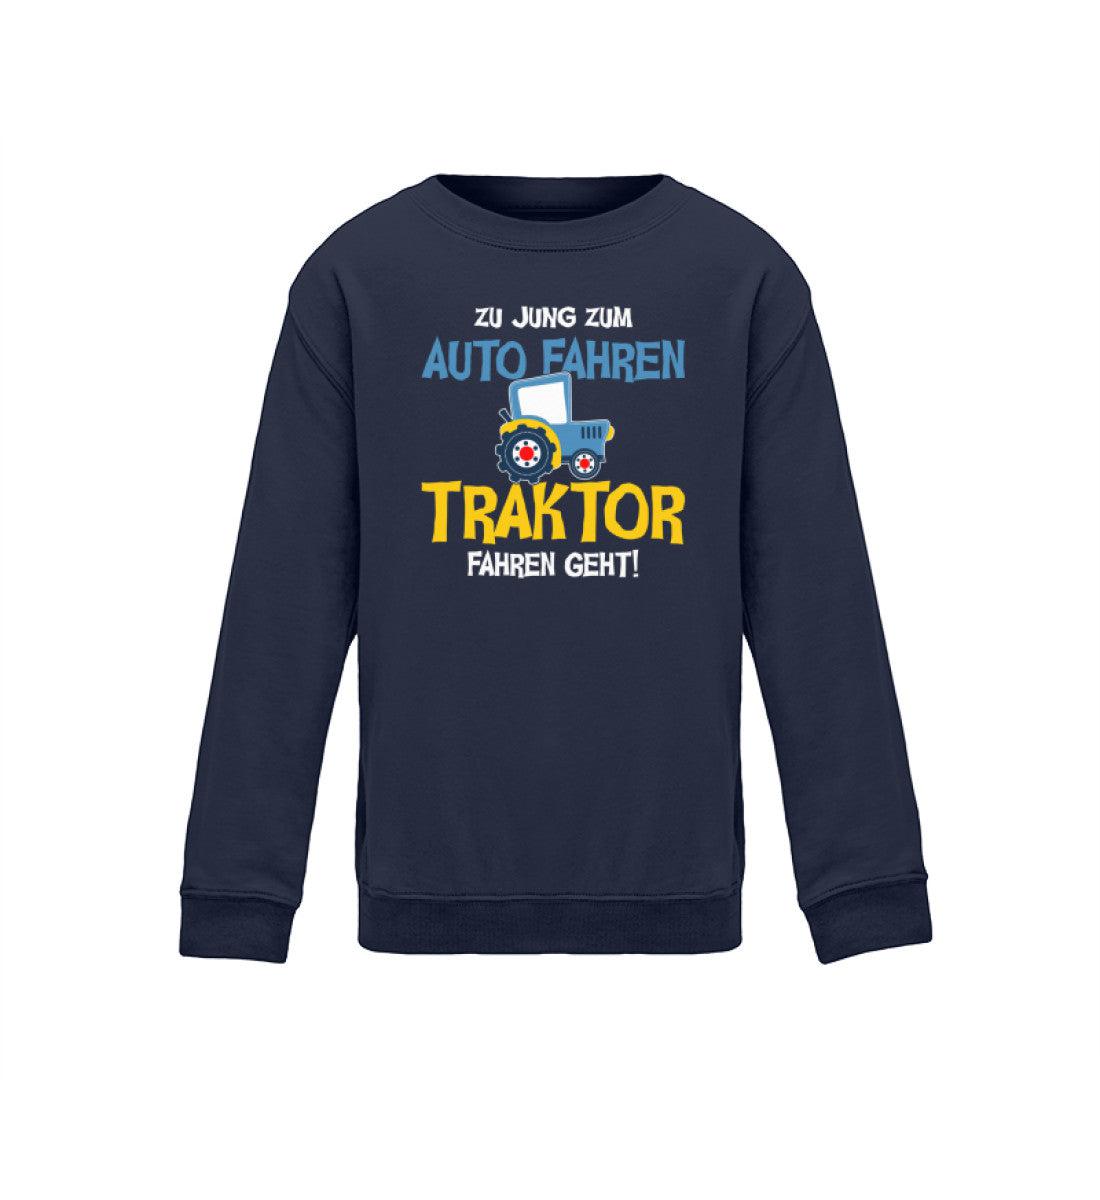 Zu jung zum Auto fahren Traktor fahren geht · Kinder Sweatshirt-Kinder Sweatshirt-Oxford Navy-12/14 (152/164)-Agrarstarz